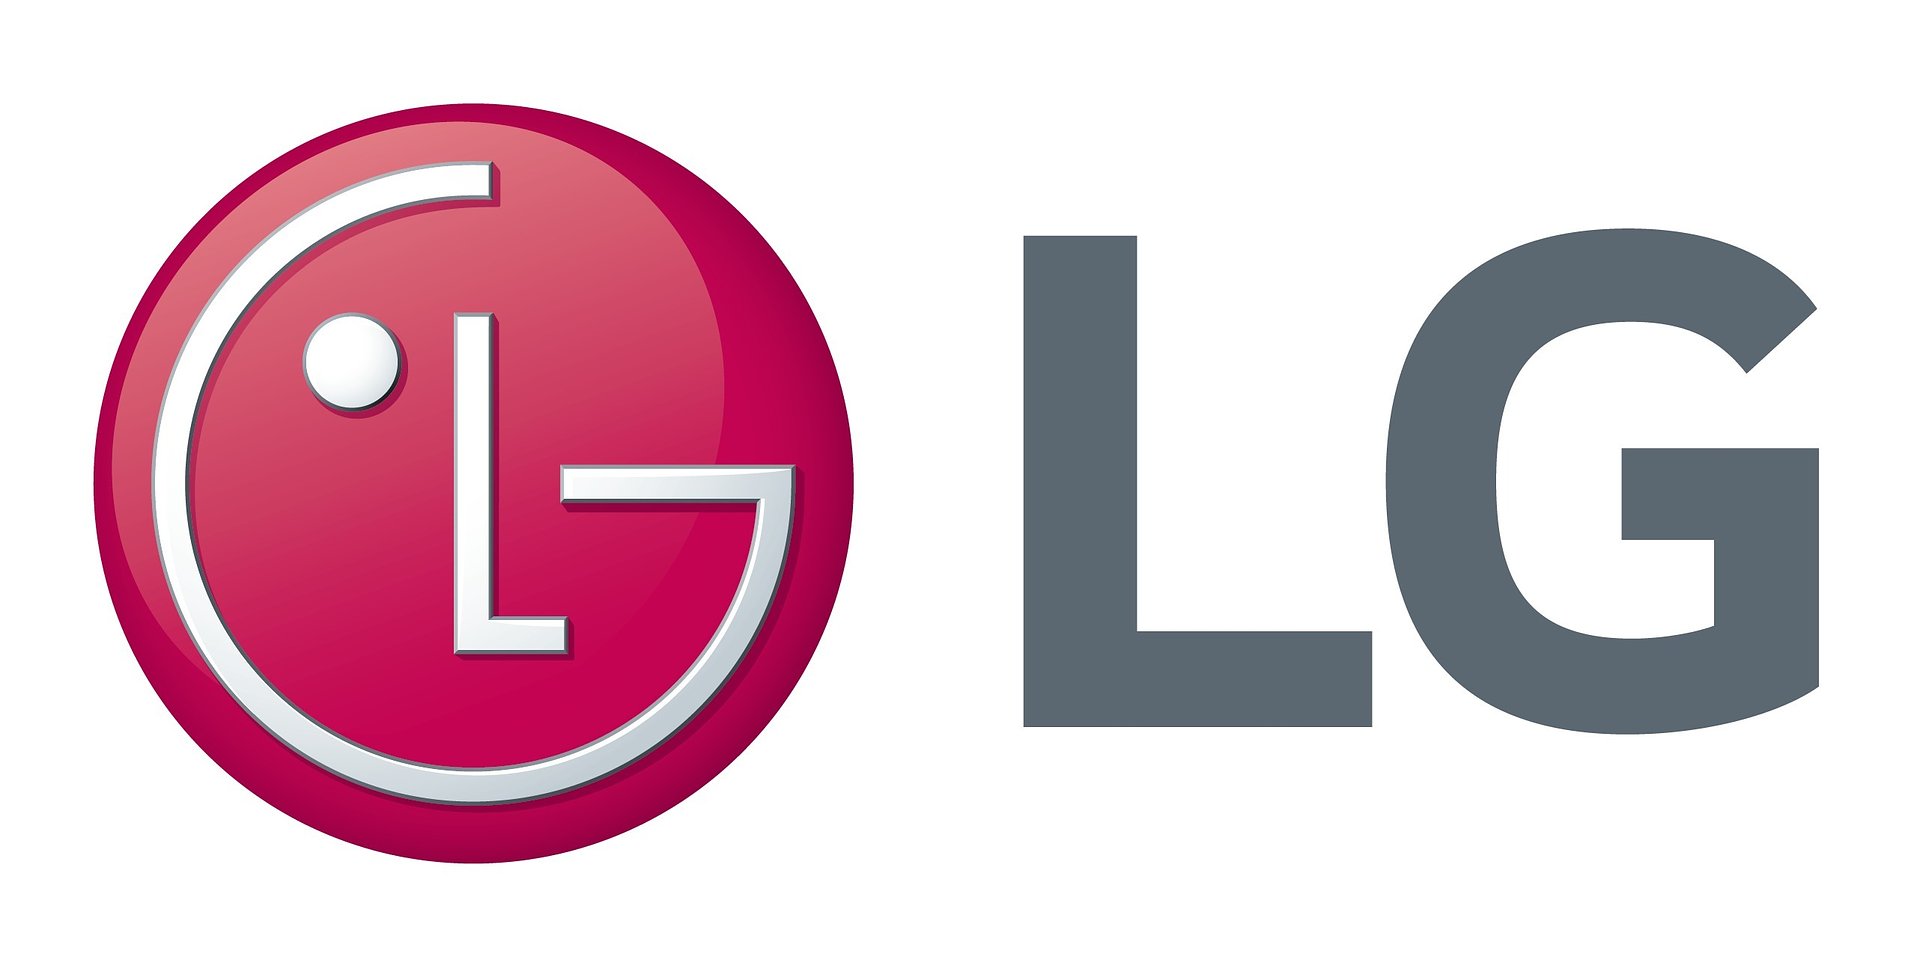 LG umożliwia komunikację między produktami różnych marek dzięki platformie inteligentnego domu LG ThinQ